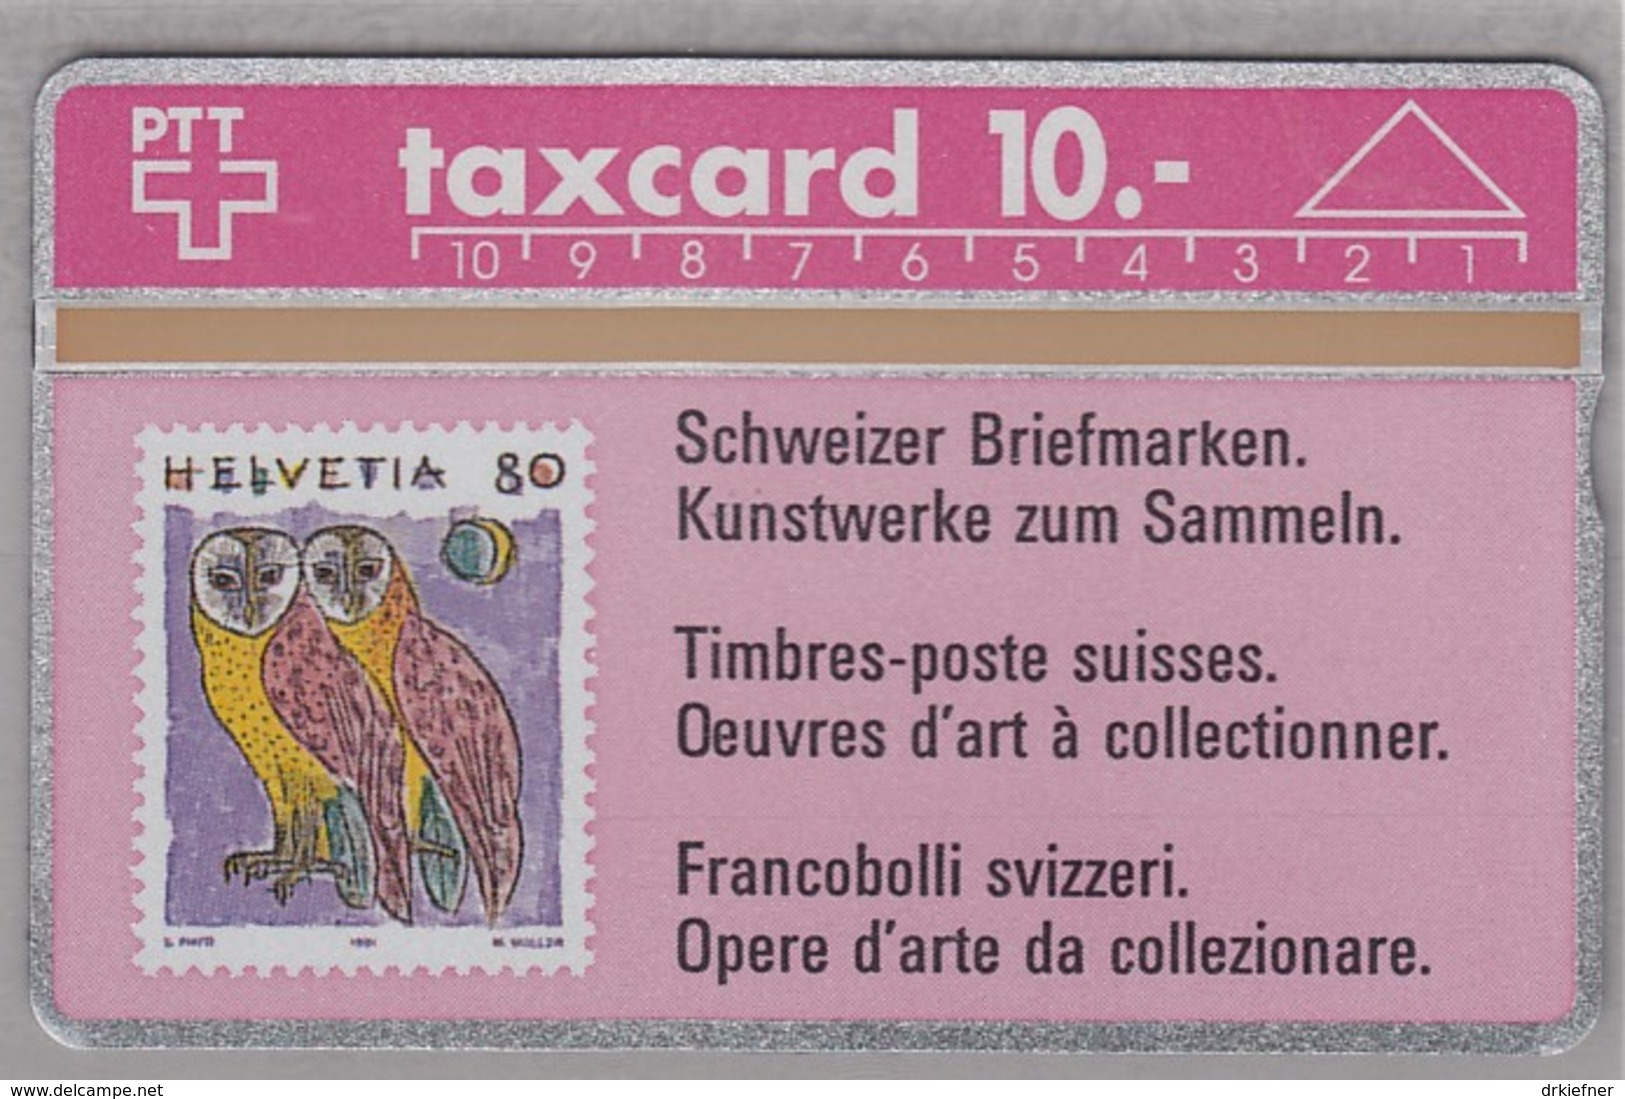 SCHWEIZ TELEFONKARTE Taxcard 10 SFr, Motiv MiNr. 1437, Schleiereule, 1991 - Briefmarken & Münzen